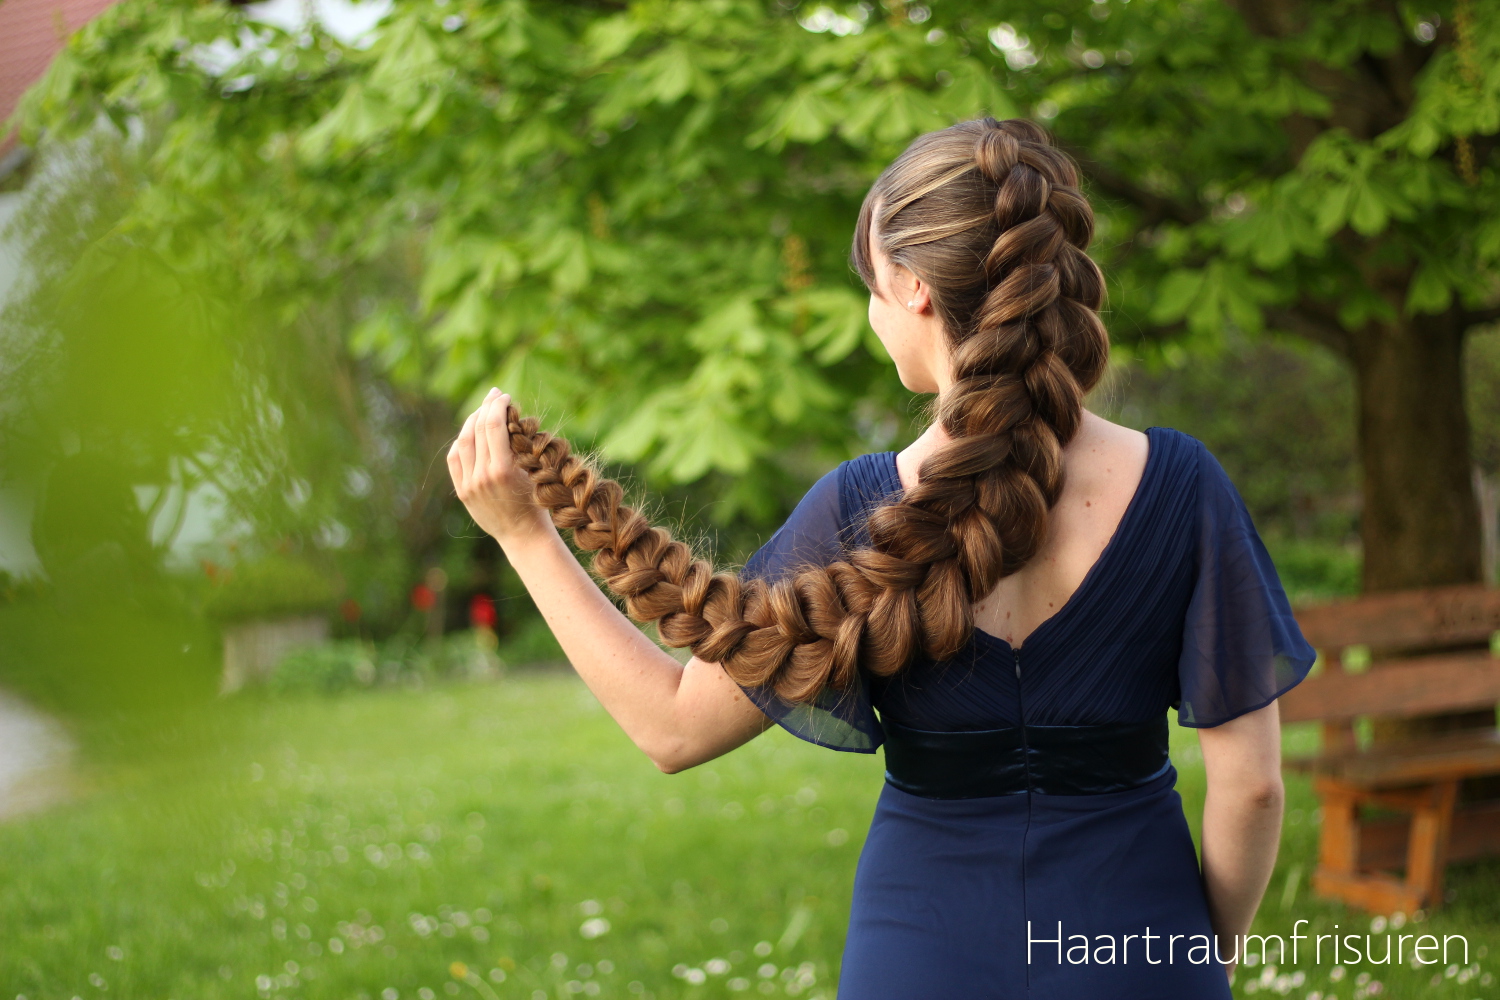 Haartraumfrisuren - lange Haare pflegen und frisieren - Part 2  width=